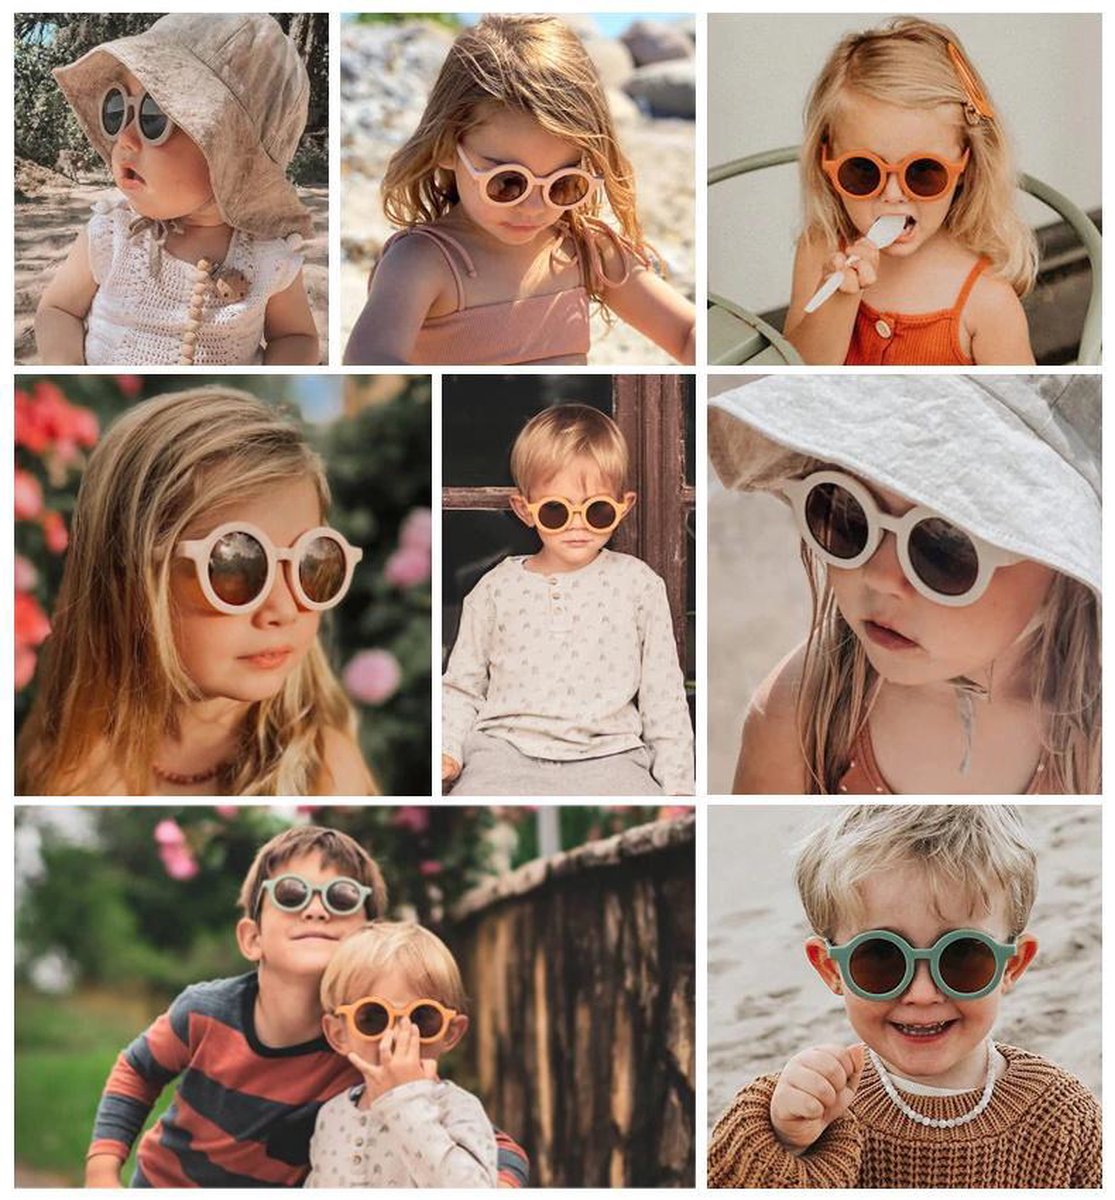 Kids Sunglasses | Mighty Orange - UV400